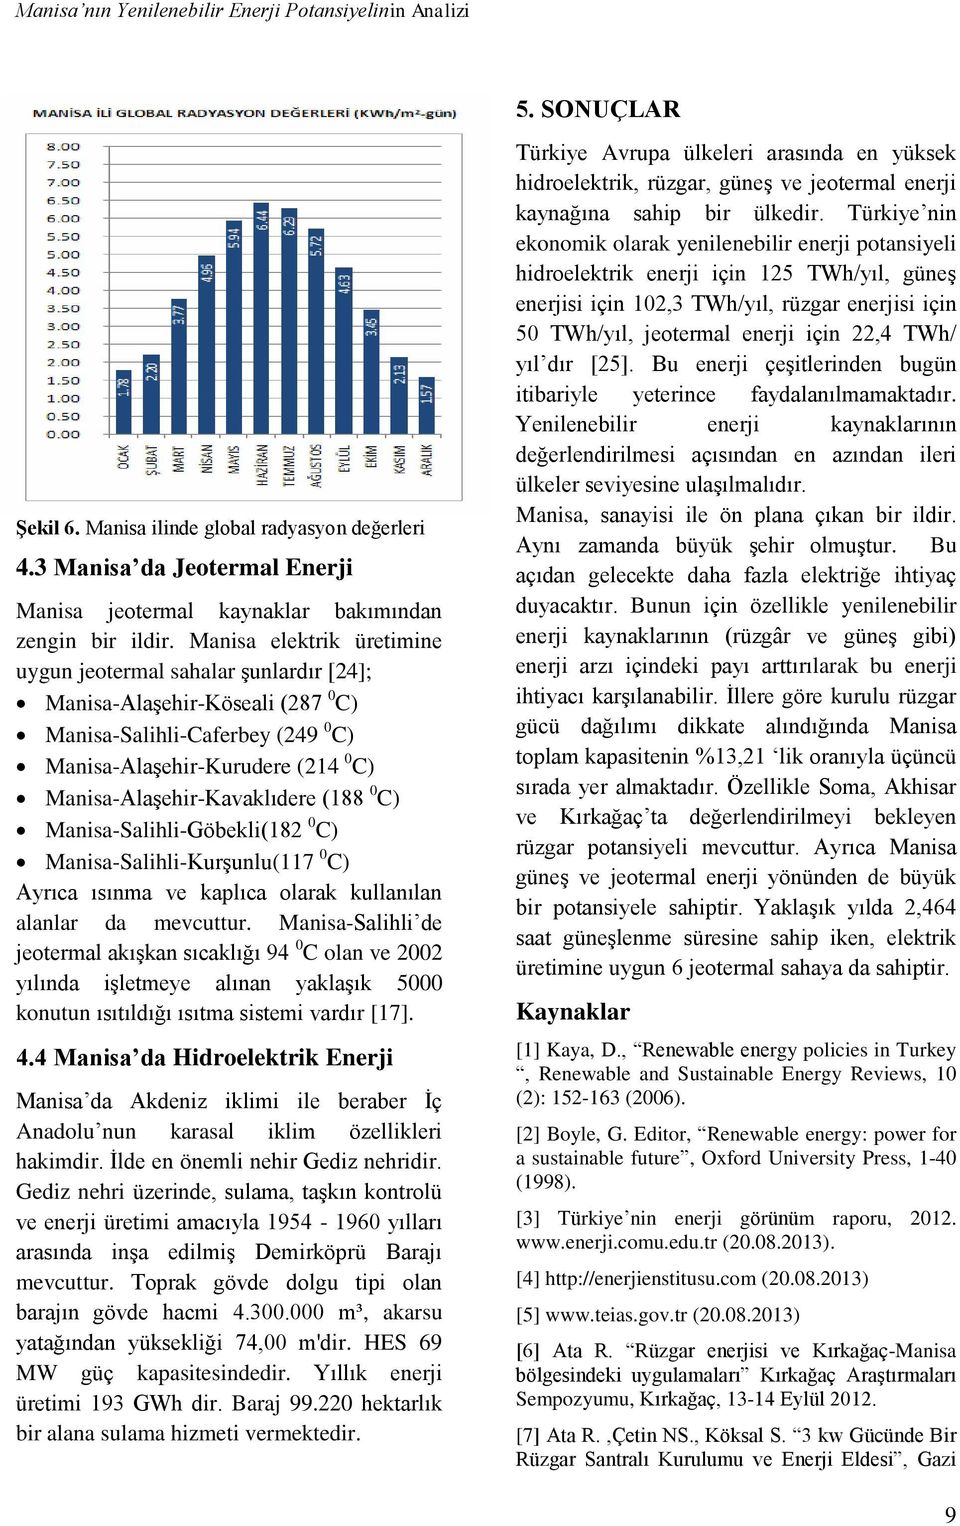 Manisa elektrik üretimine uygun jeotermal sahalar şunlardır [24]; Manisa-Alaşehir-Köseali (287 0 C) Manisa-Salihli-Caferbey (249 0 C) Manisa-Alaşehir-Kurudere (214 0 C) Manisa-Alaşehir-Kavaklıdere